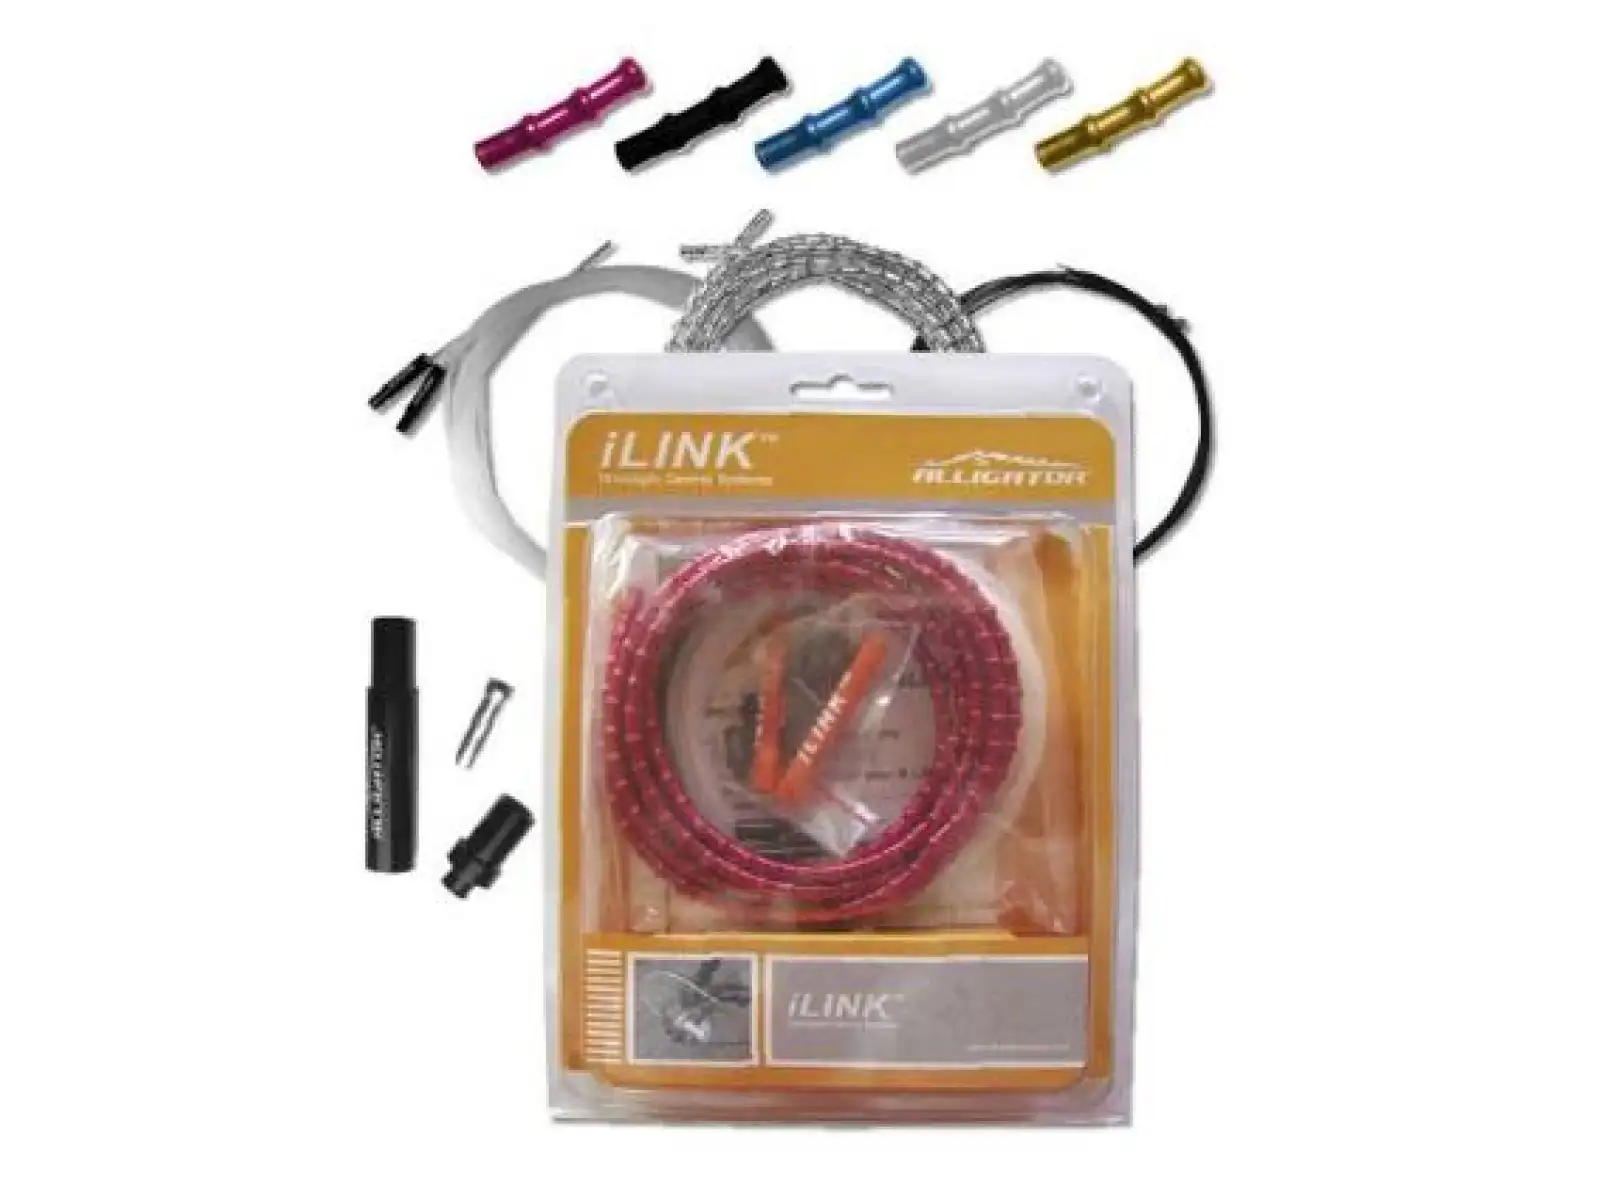 Aligator I-link cable set shifter